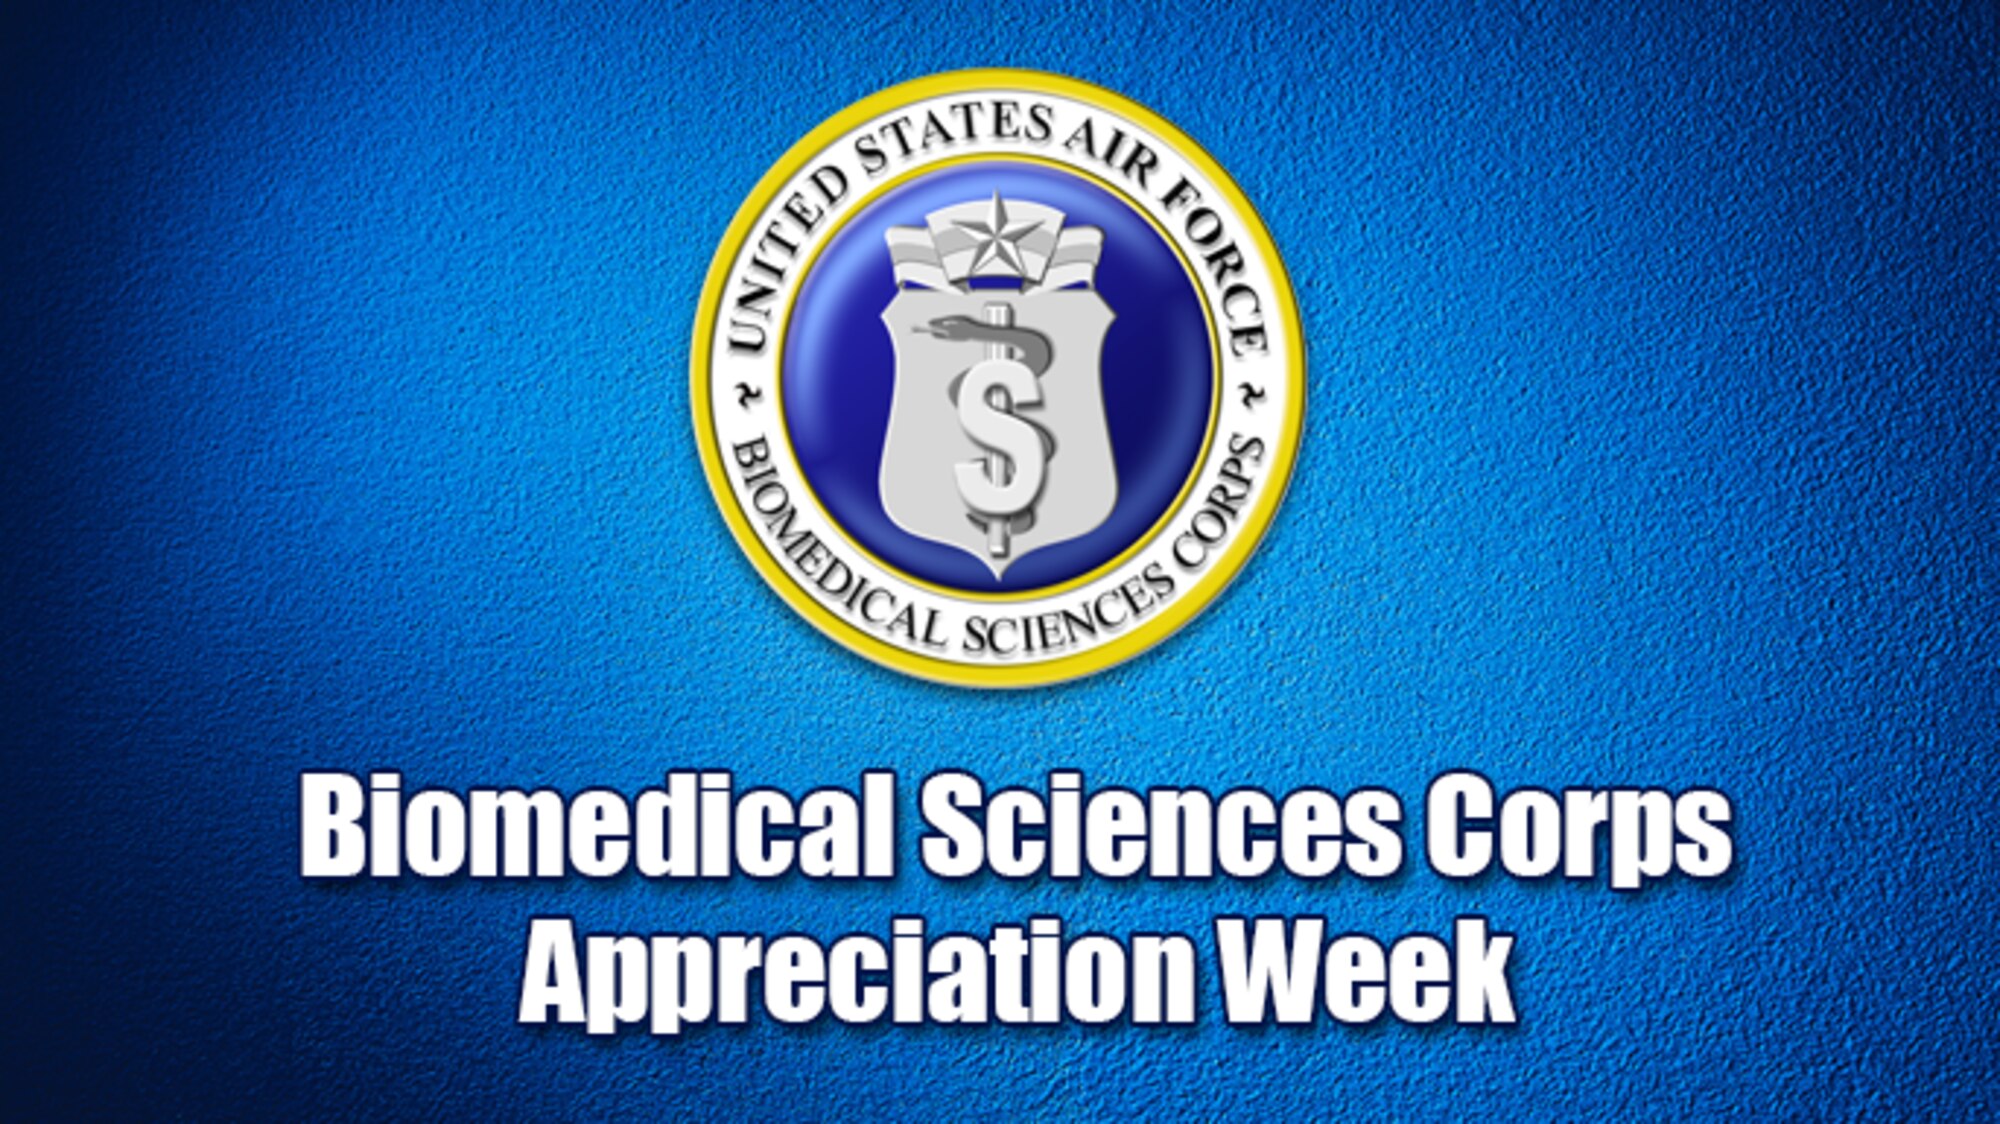 Biomedical Sciences Corps Appreciation Week 2017